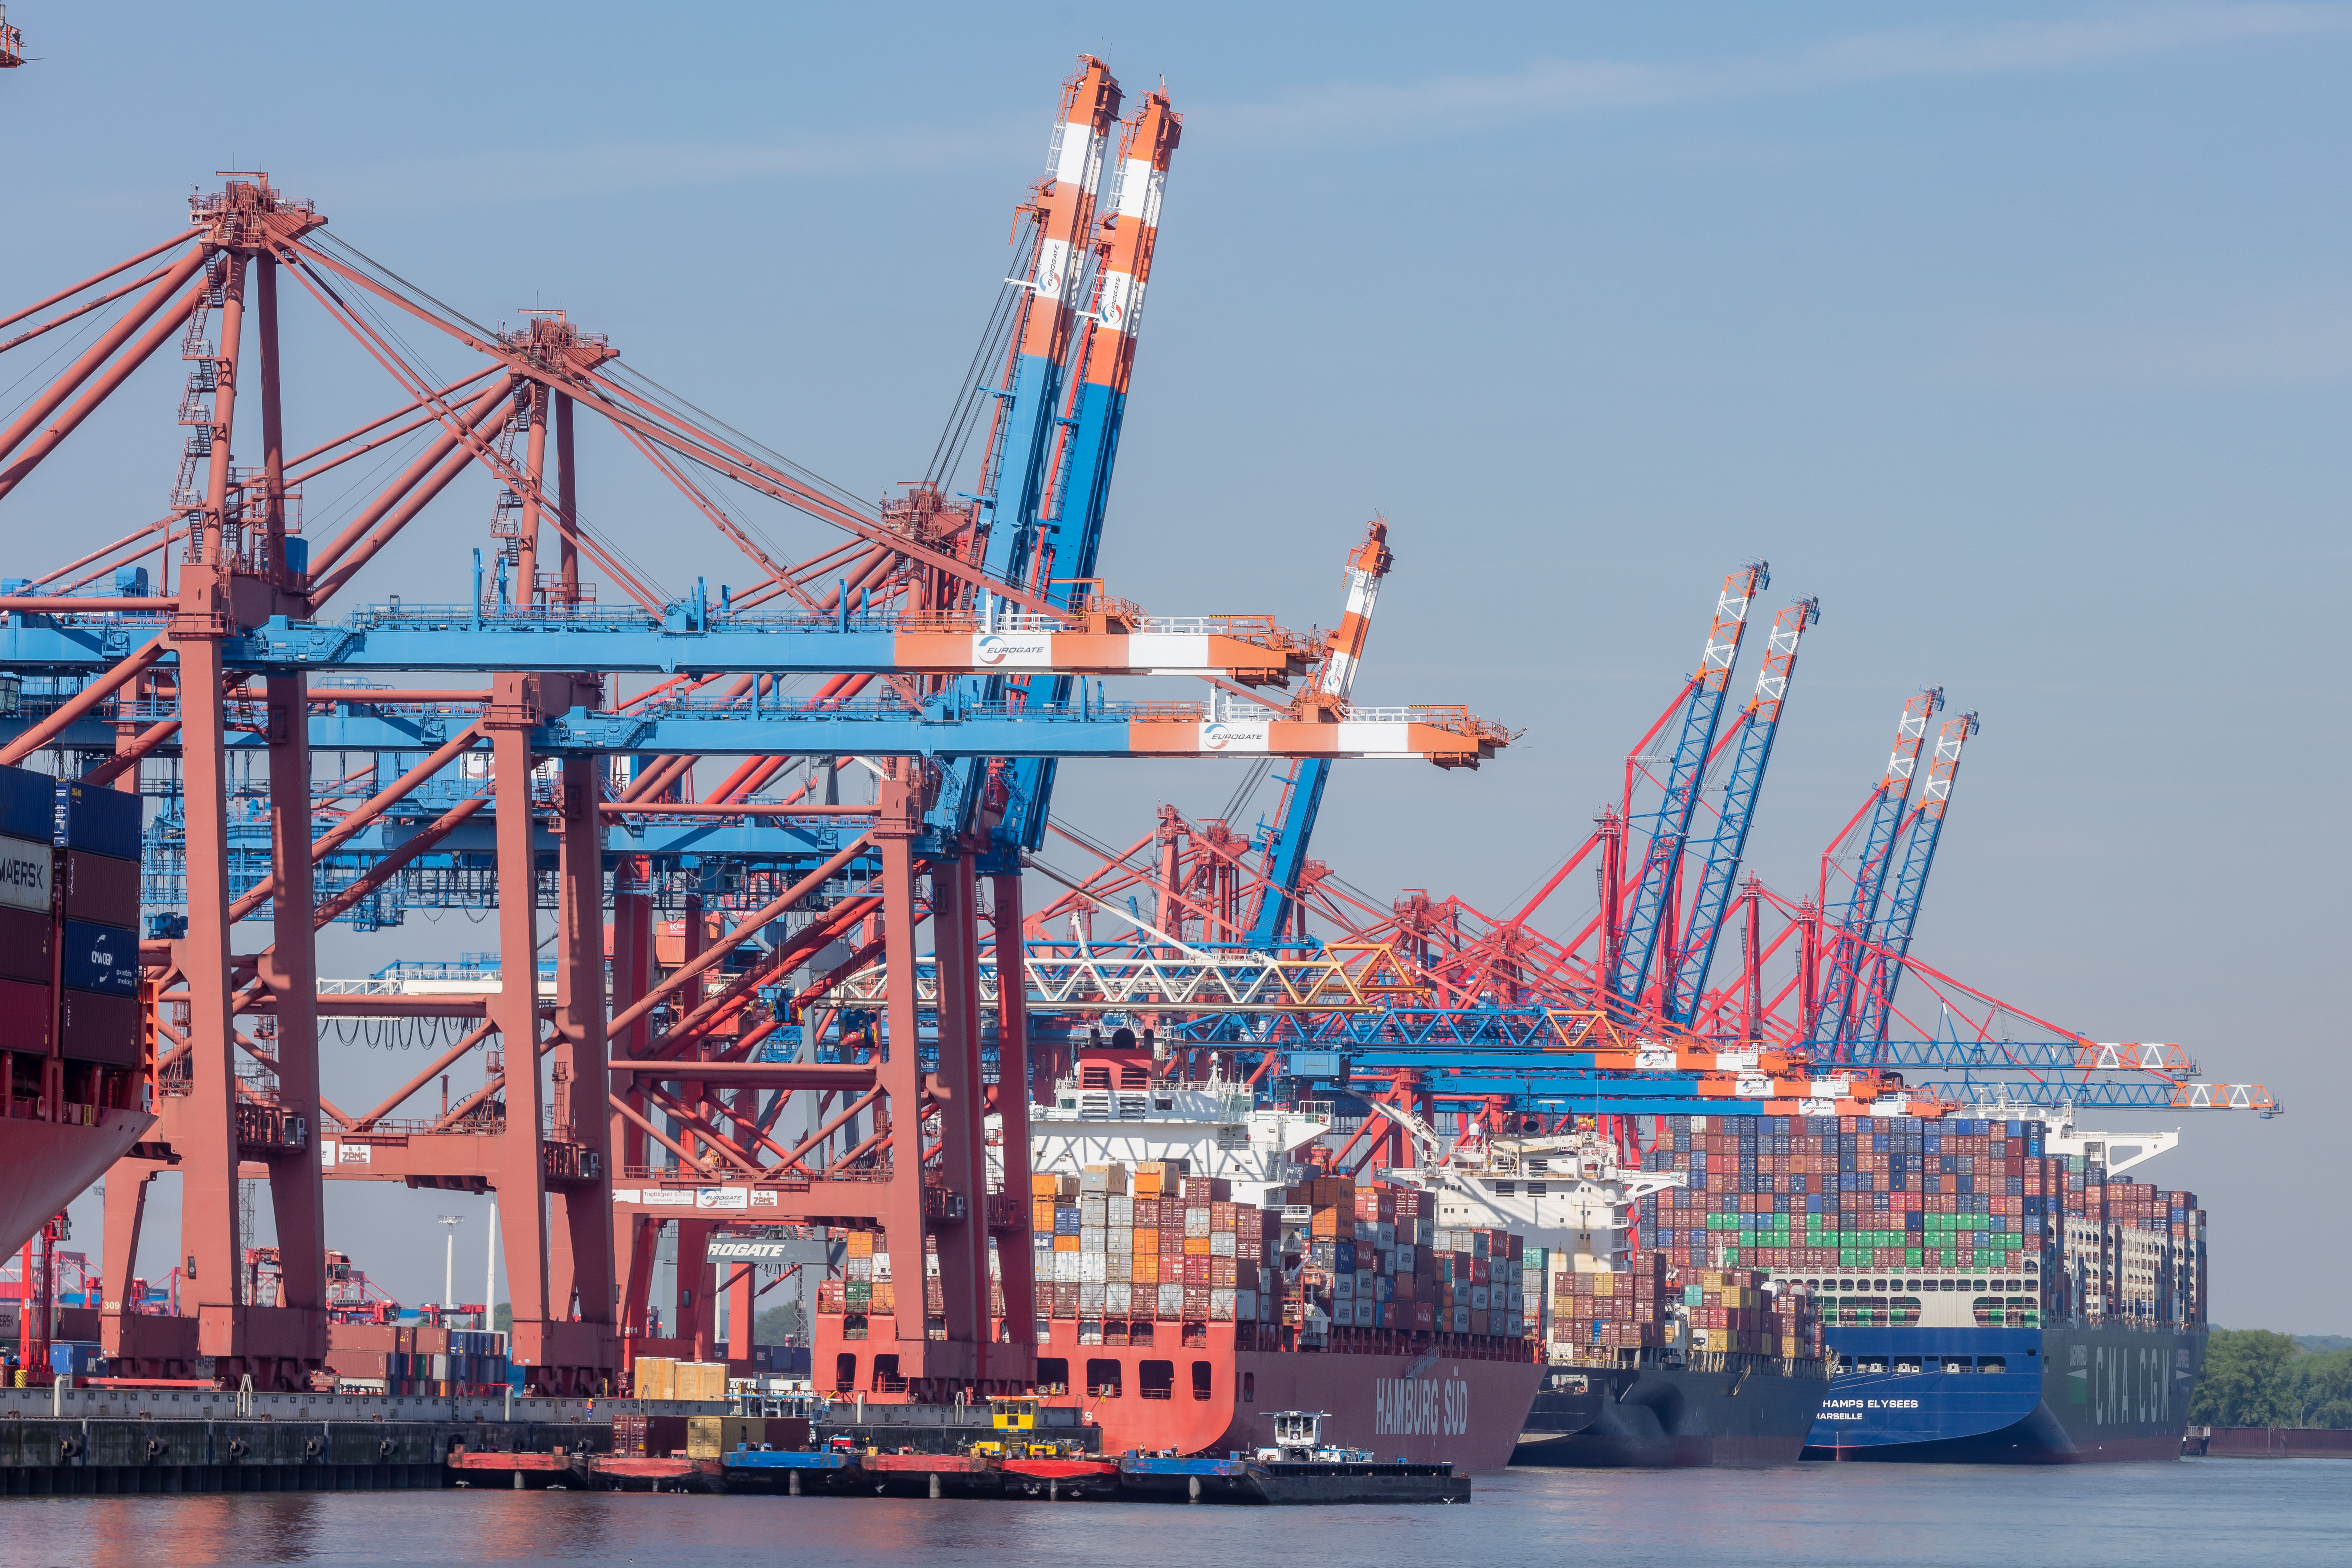 Blick auf ein Hafenterminal: Vor einer langen Reihe an Containerkränen werden zwei große Schiffe ent- oder beladen.